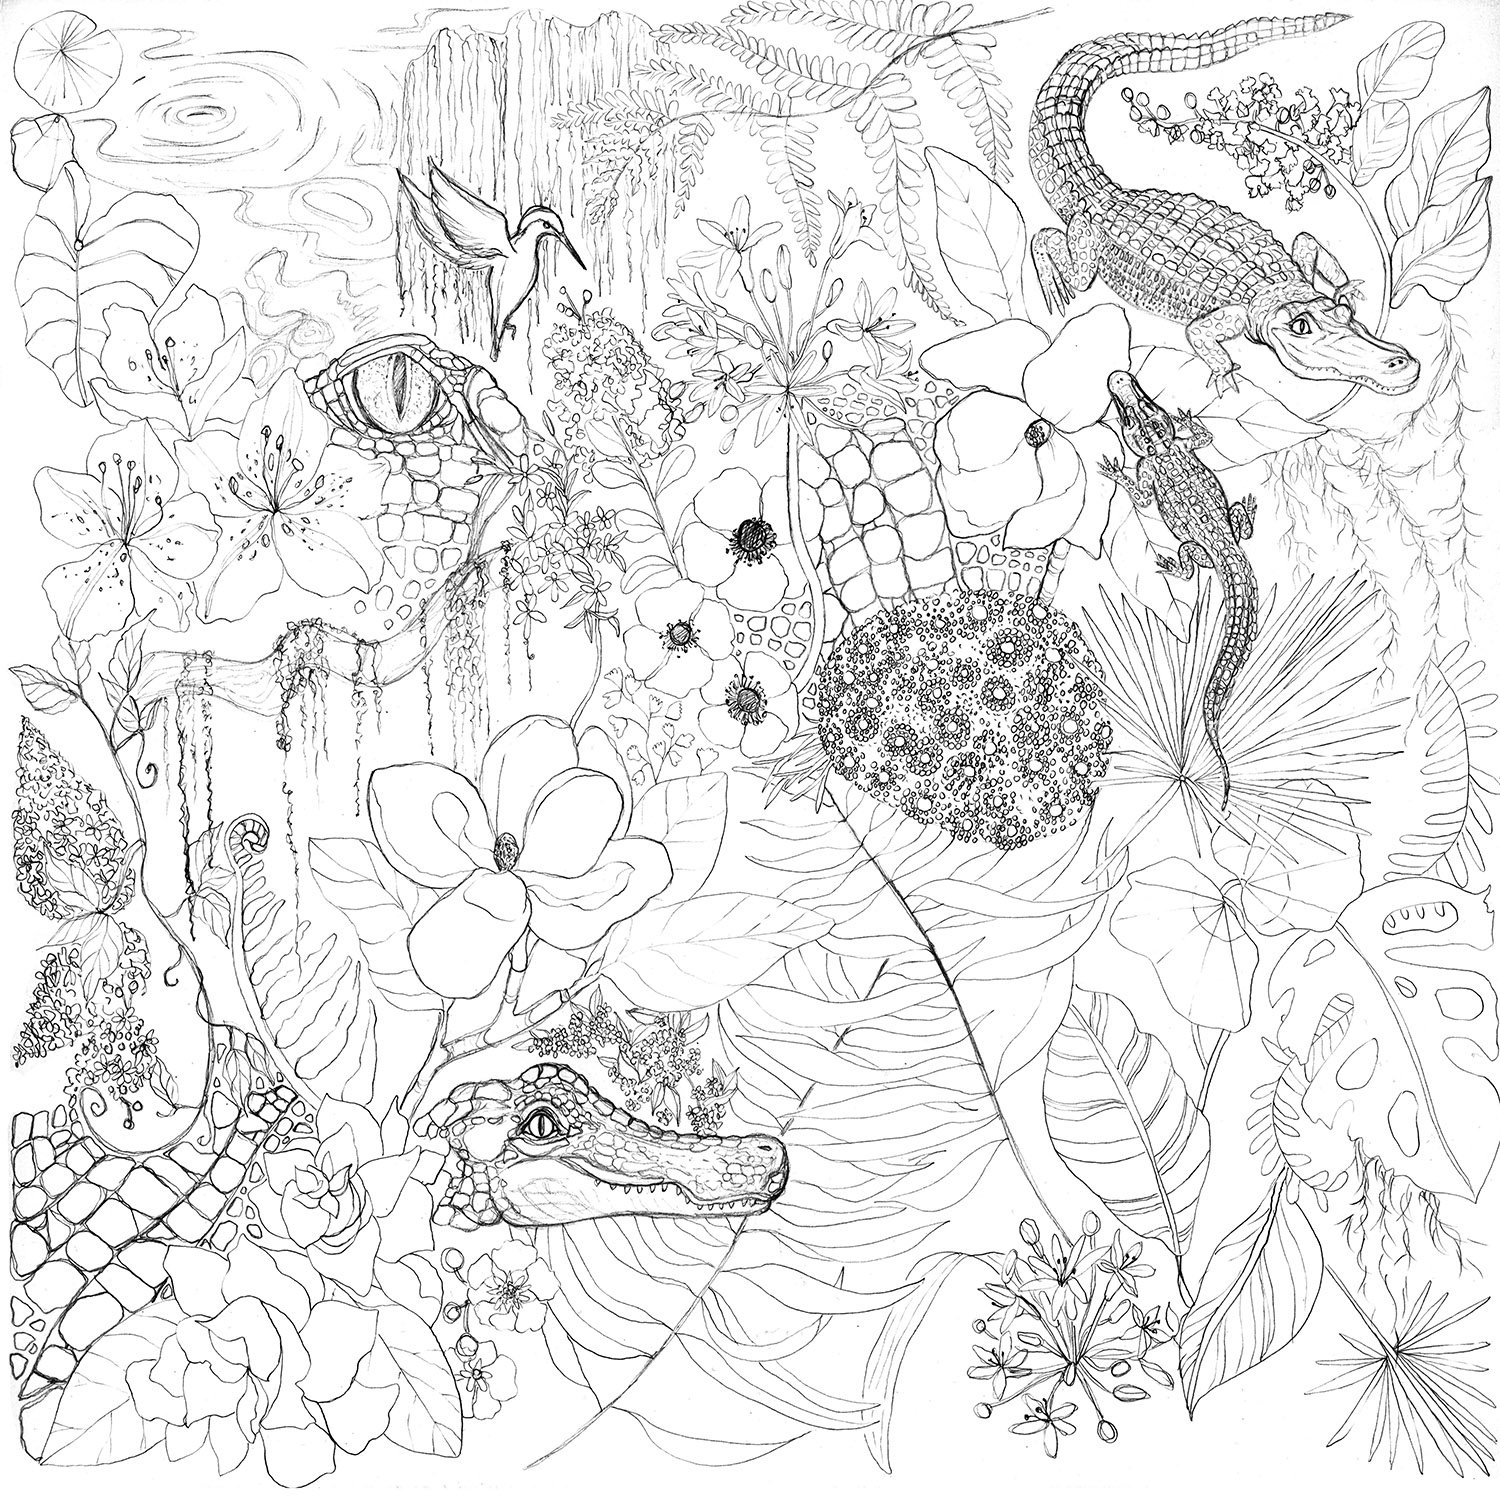 Alligator Garden Sketch by Marcella Wylie.jpg